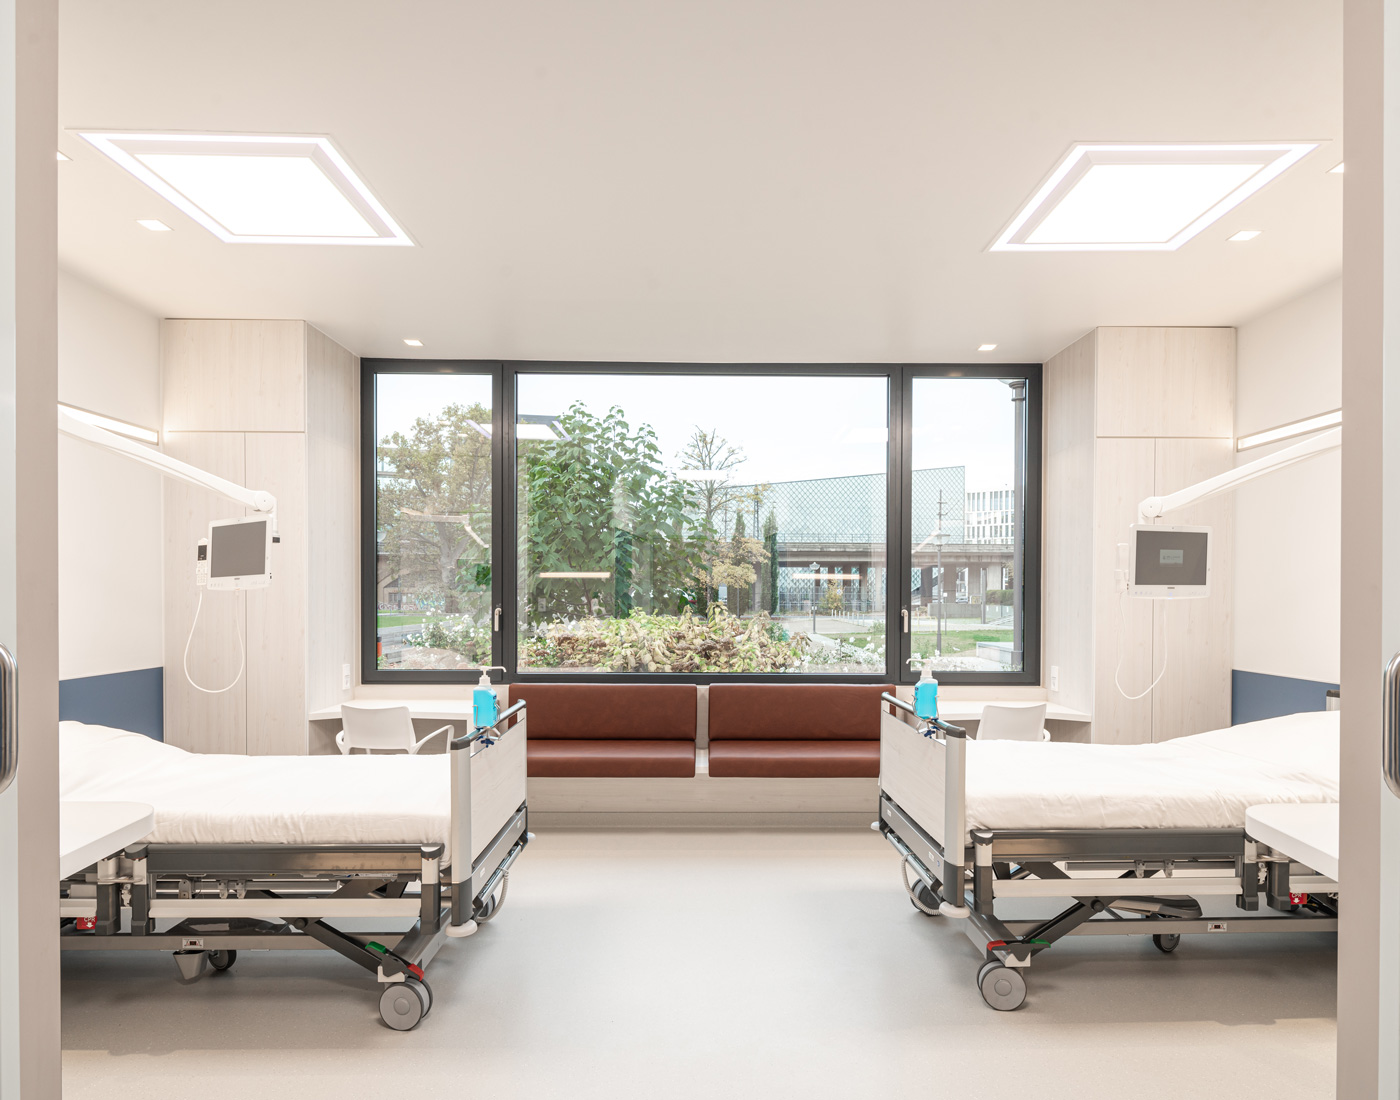 inspirující studie stanovuje nový standard v architektuře nemocničního pokoje